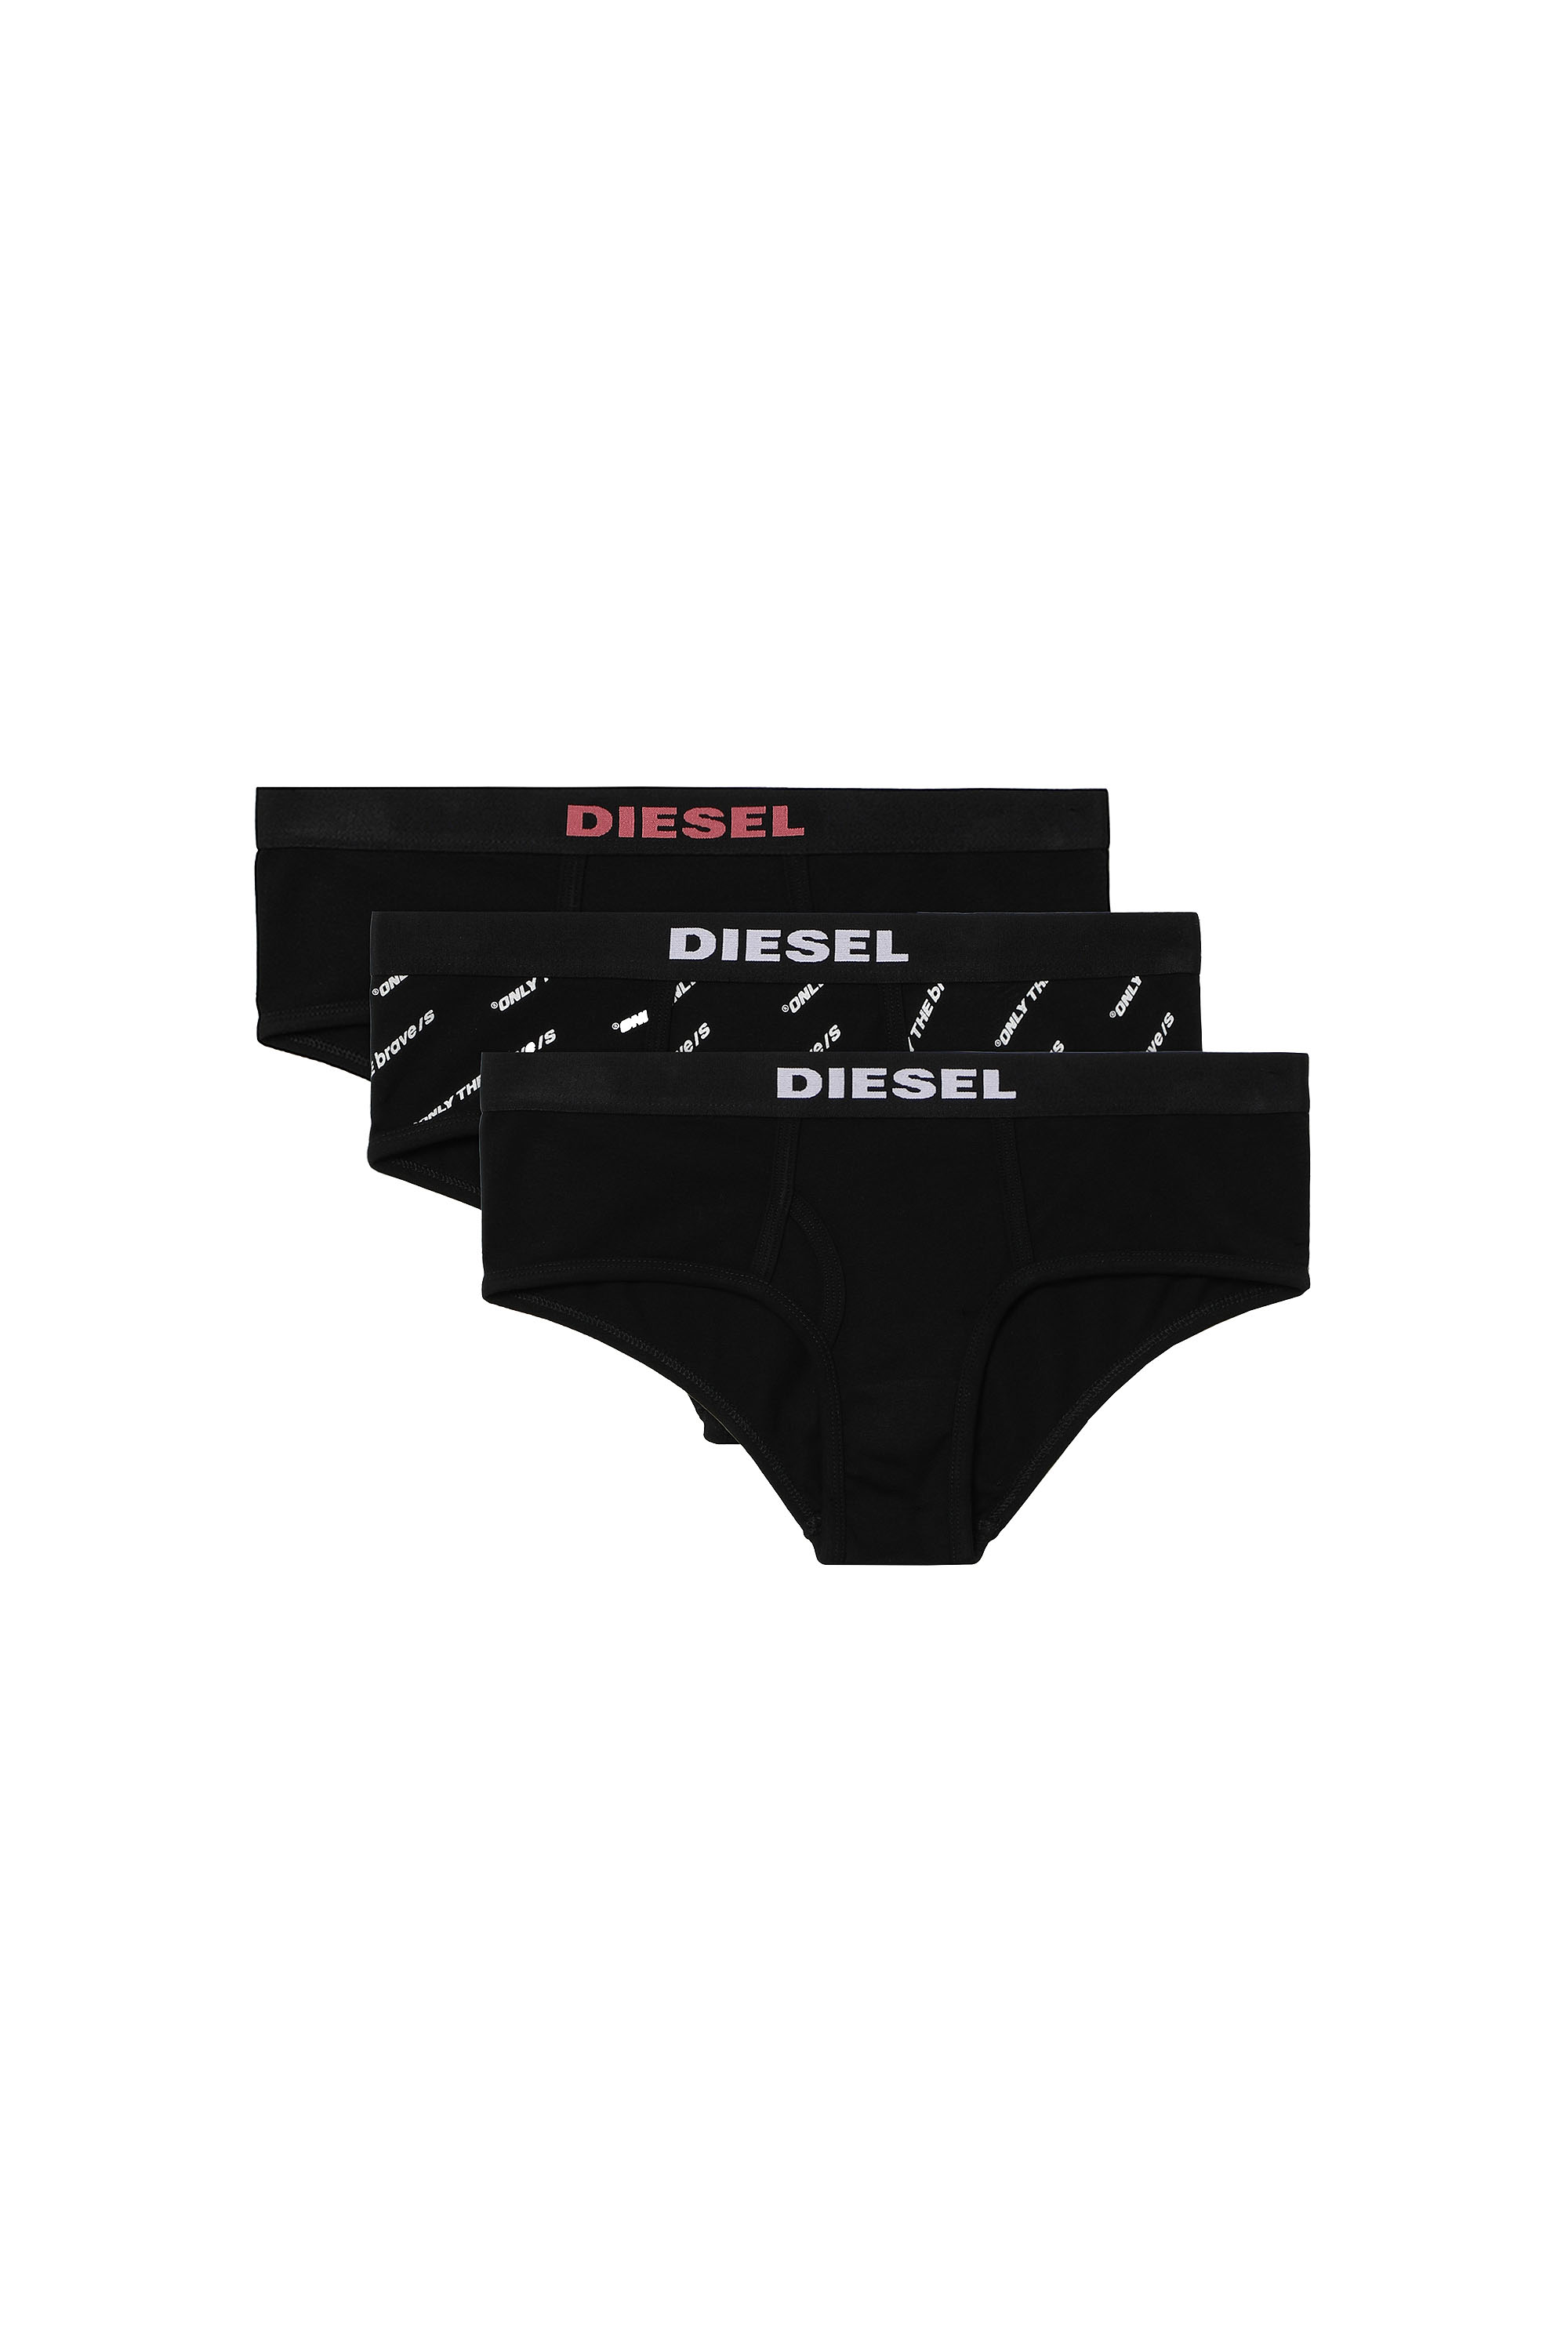 Diesel - UFPN-OXY-THREEPACK,  - Image 1